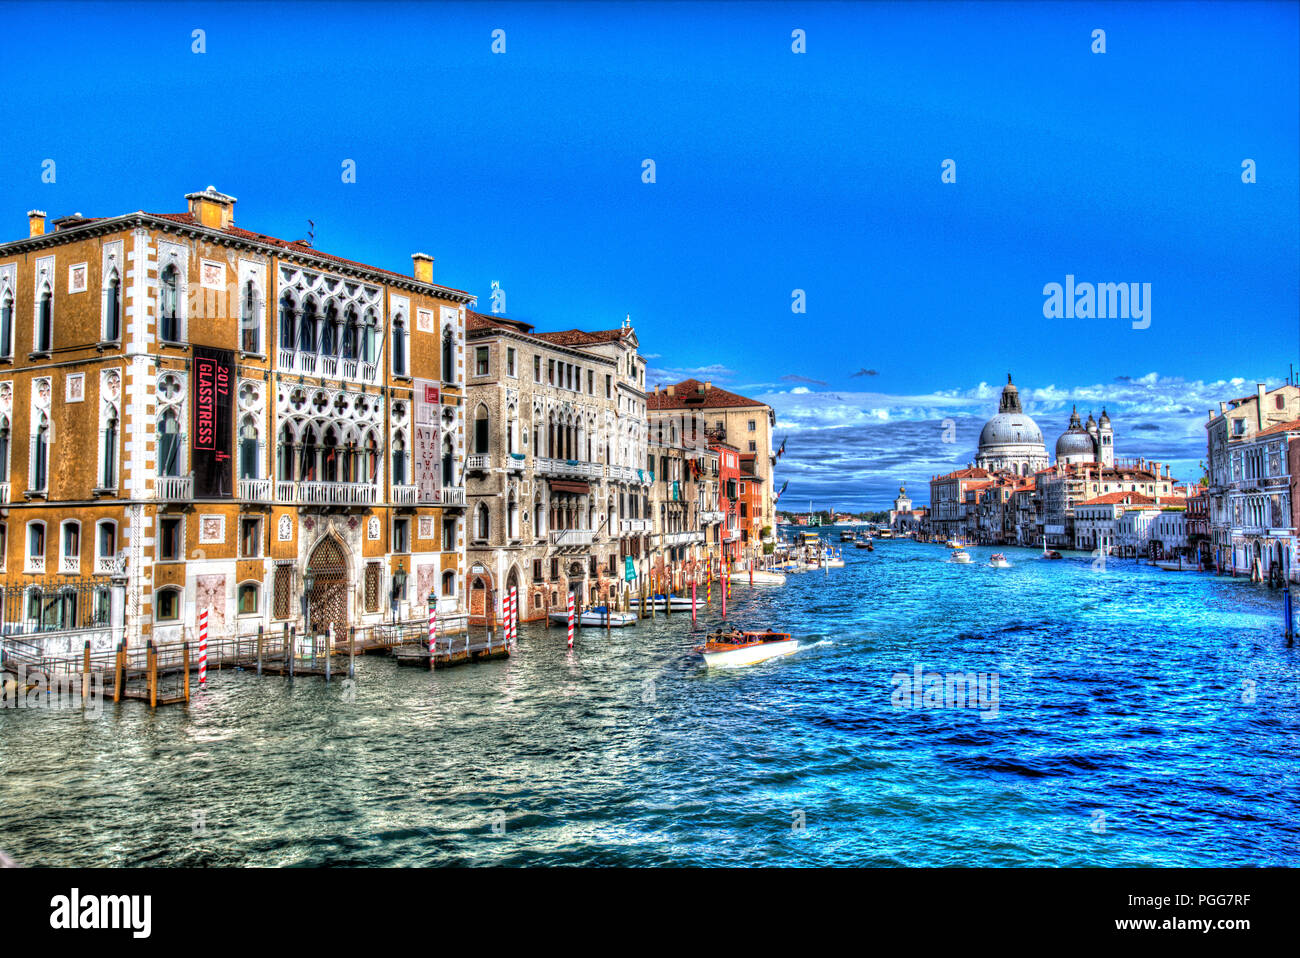 Città di Venezia. Il Canal Grande di Venezia, con la reggia di Palazzo Cavalli-Franchetti sulla sinistra dell'immagine. Foto Stock